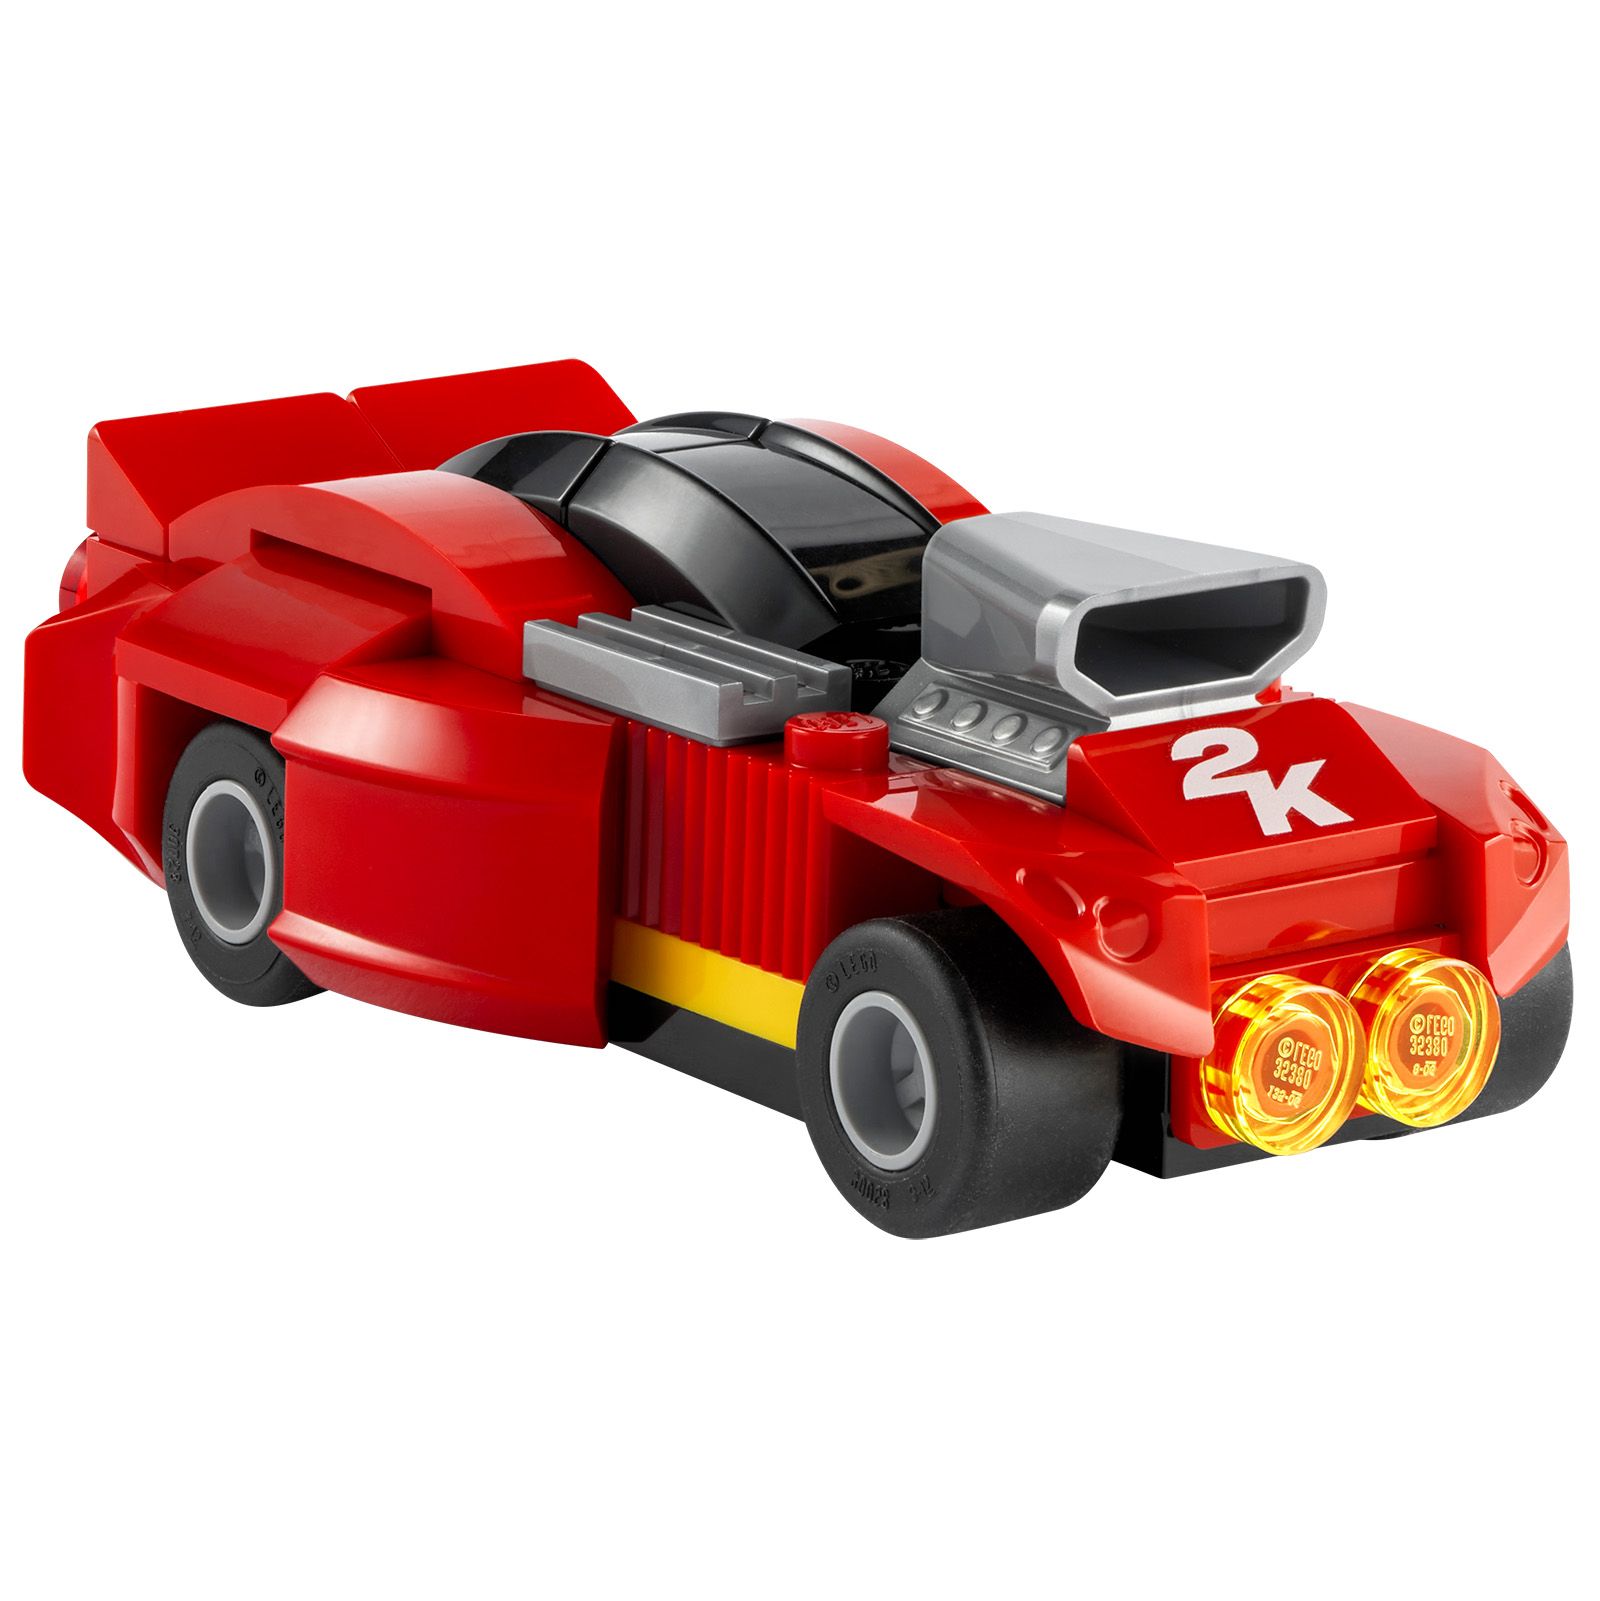 LEGO 2K Drive: مقطورة ومنتج LEGO يتم تقديمهما مع إصدارات مادية معينة من لعبة الفيديو